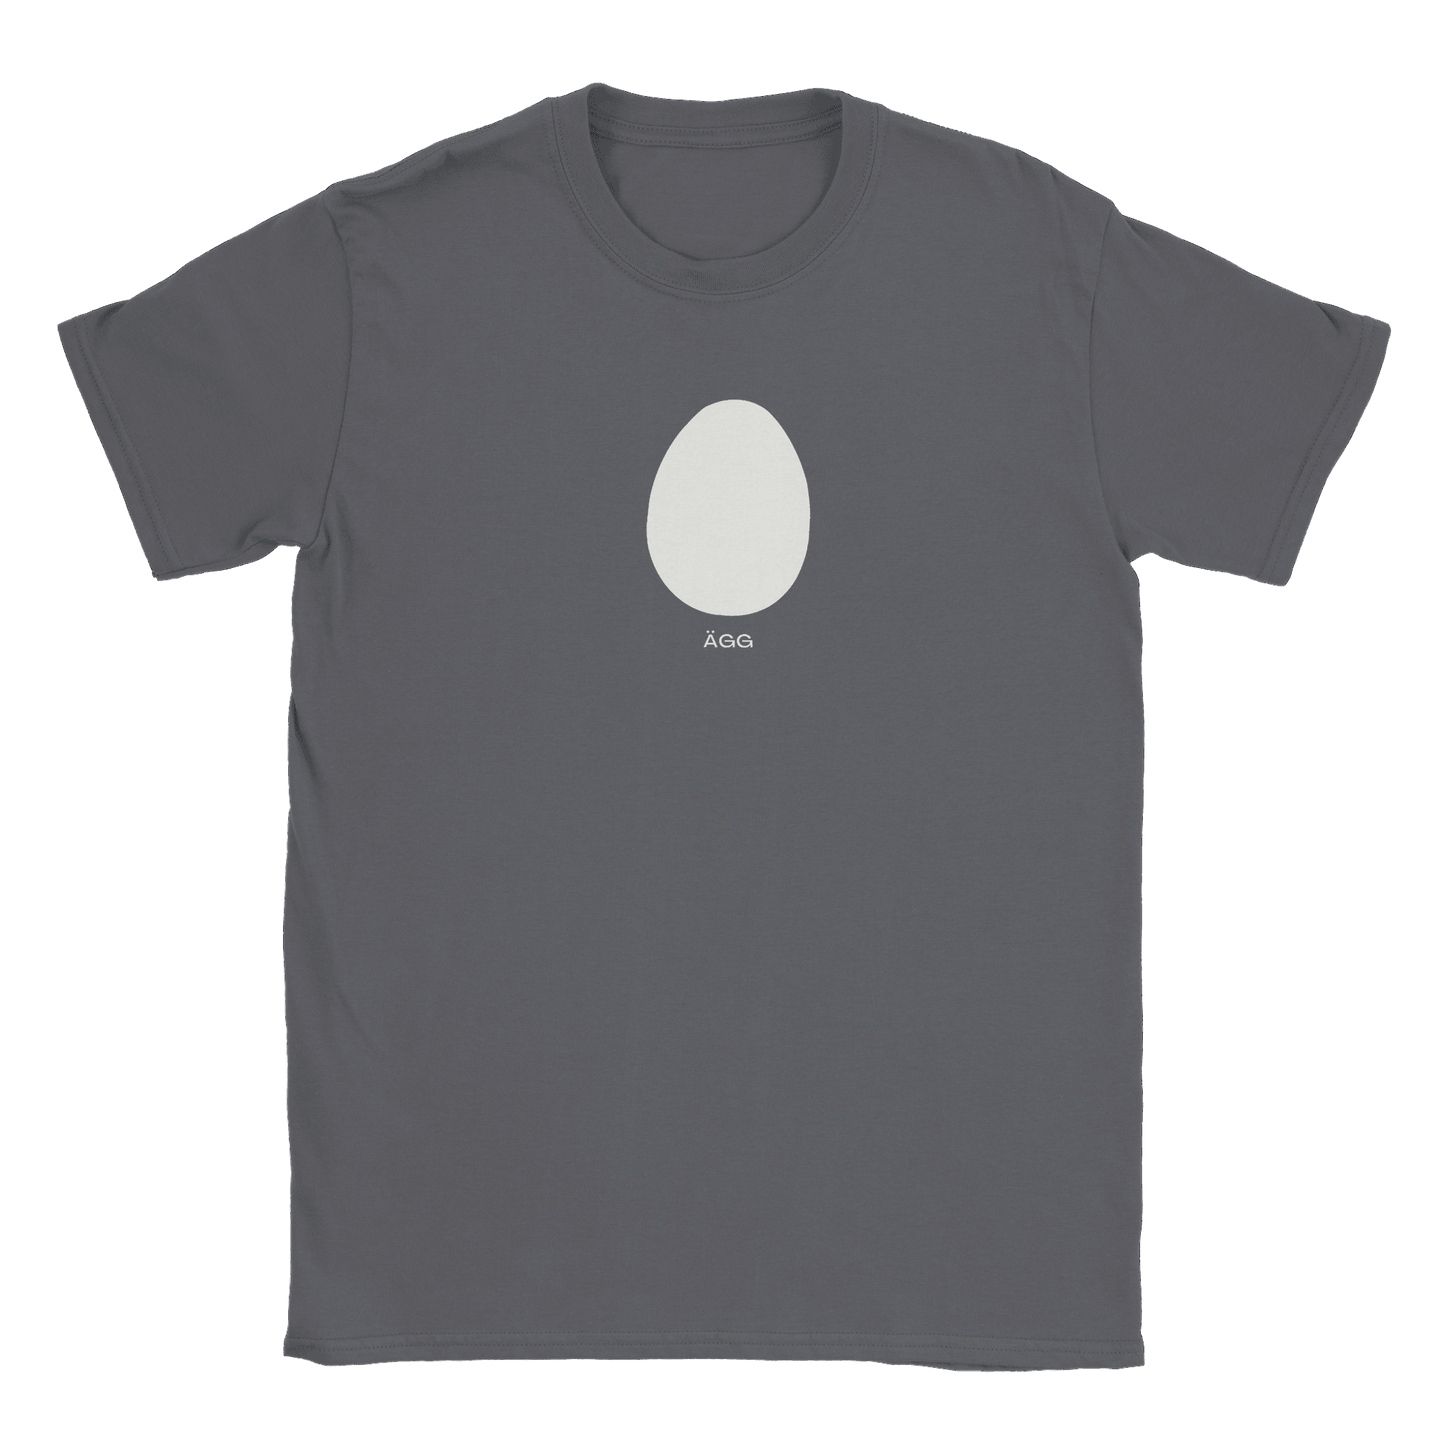 Ägg - T-shirt Charcoal